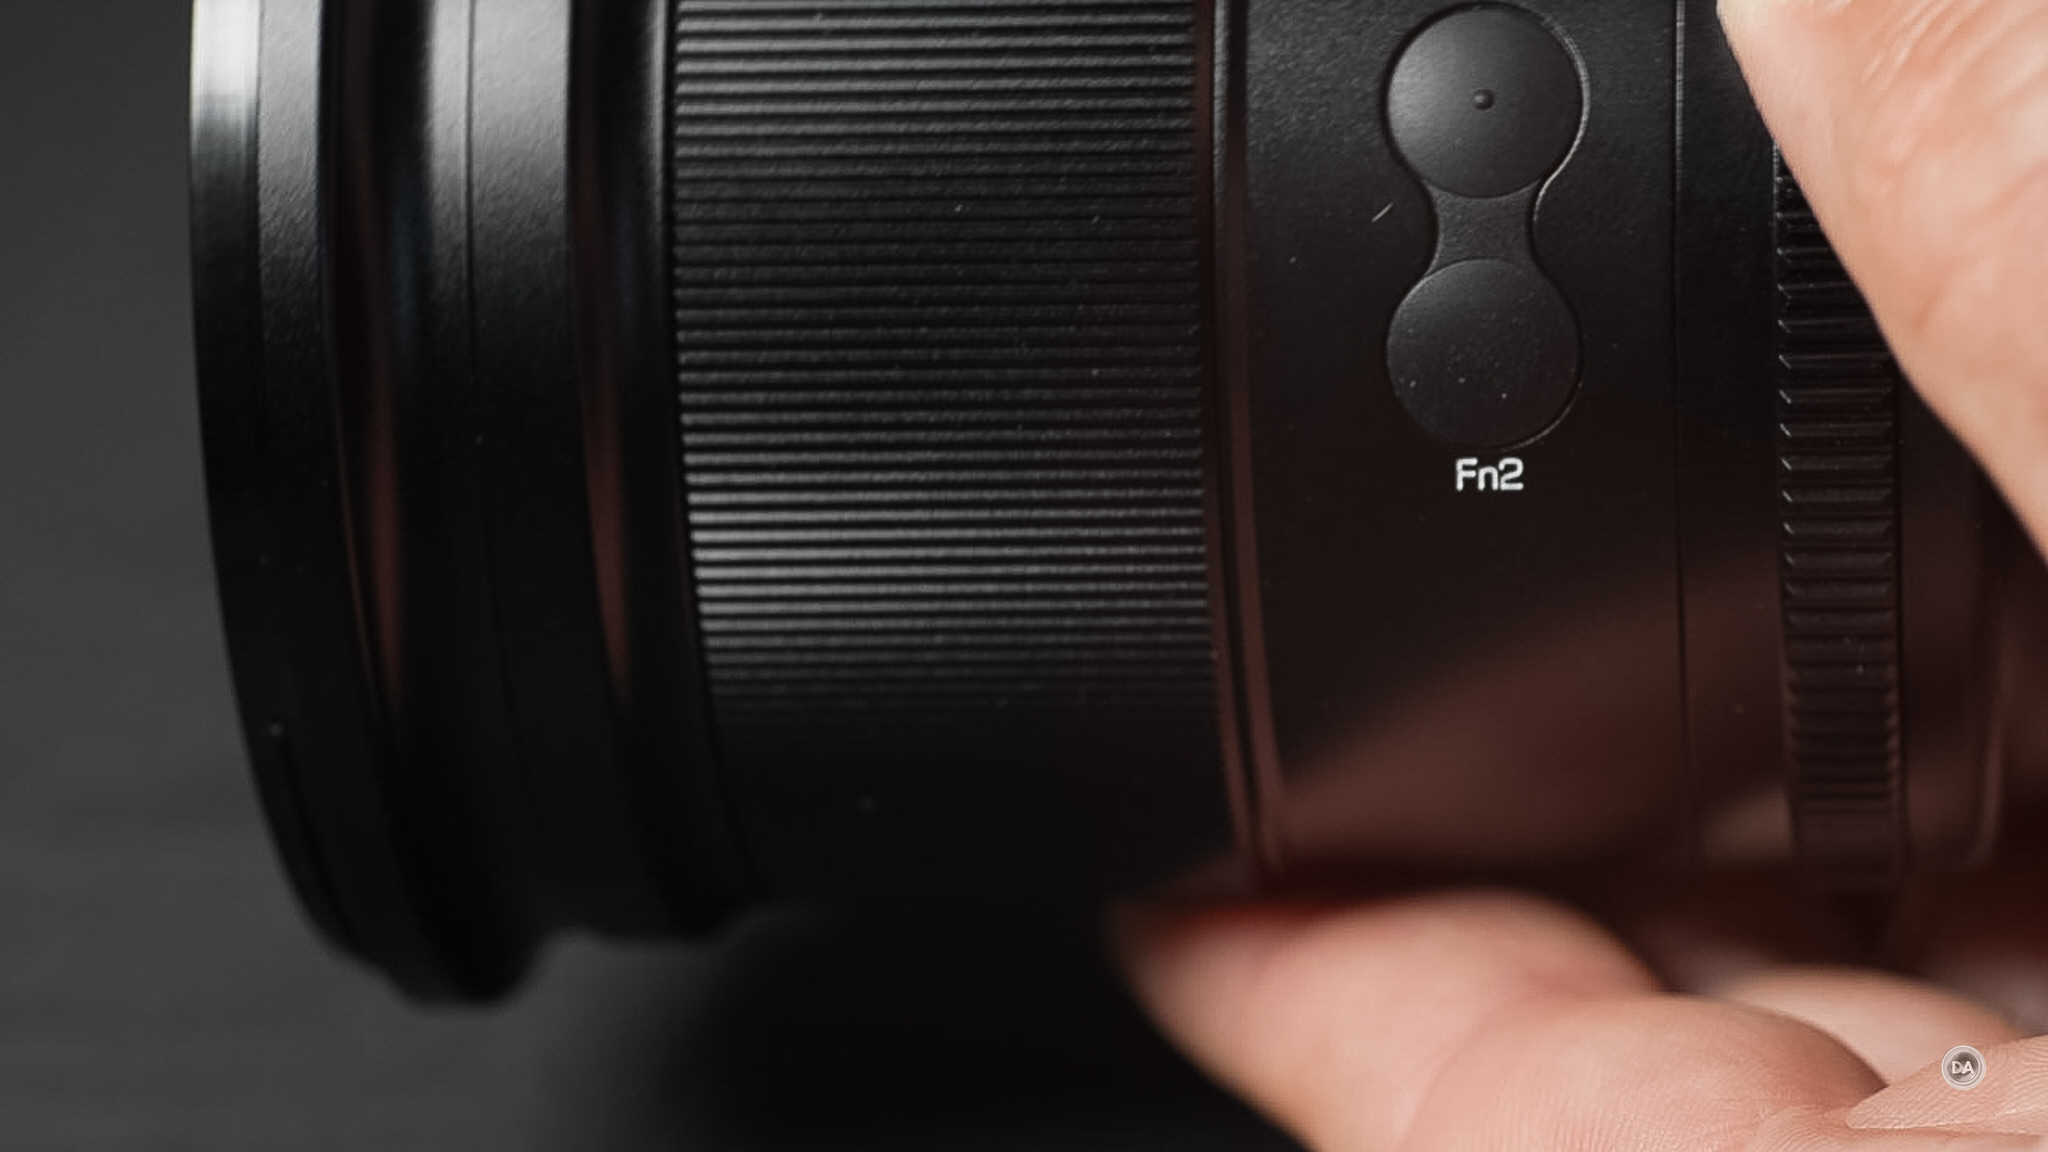 Viltrox AF 16mm f/1.8 FE Lens for Sony E AF 16/1.8 FE - Adorama